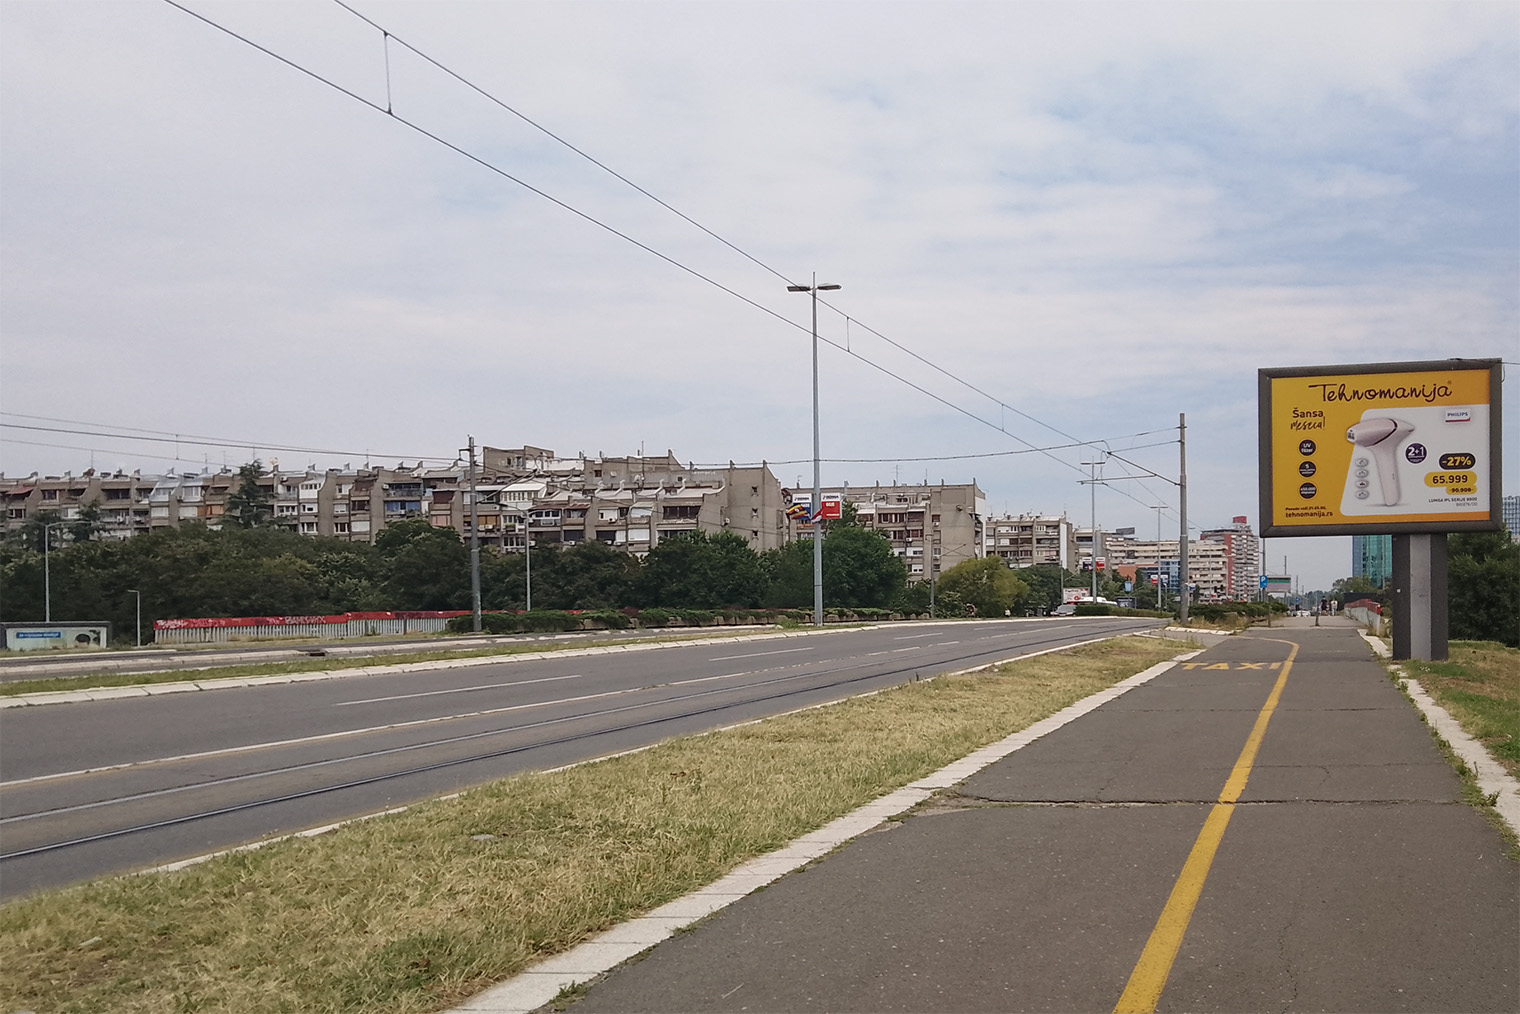 В Белграде много панельных домов. В основном они расположены в районе Новый Белград, но в других частях города тоже встречаются похожие кварталы